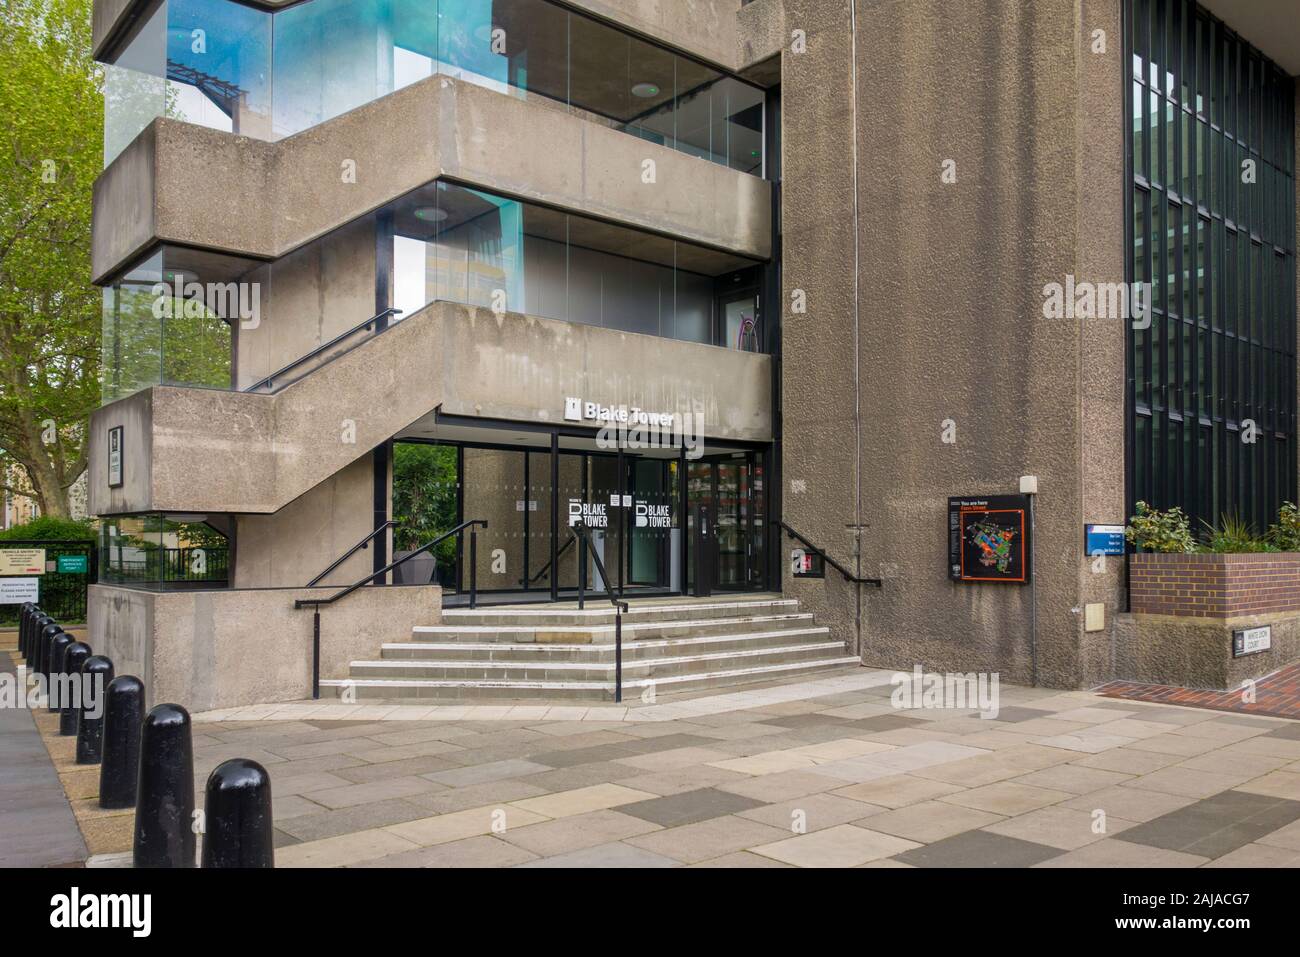 Ingresso alla Torre di Blake, Barbican station wagon, architettura brutalist Londra, Regno Unito Foto Stock